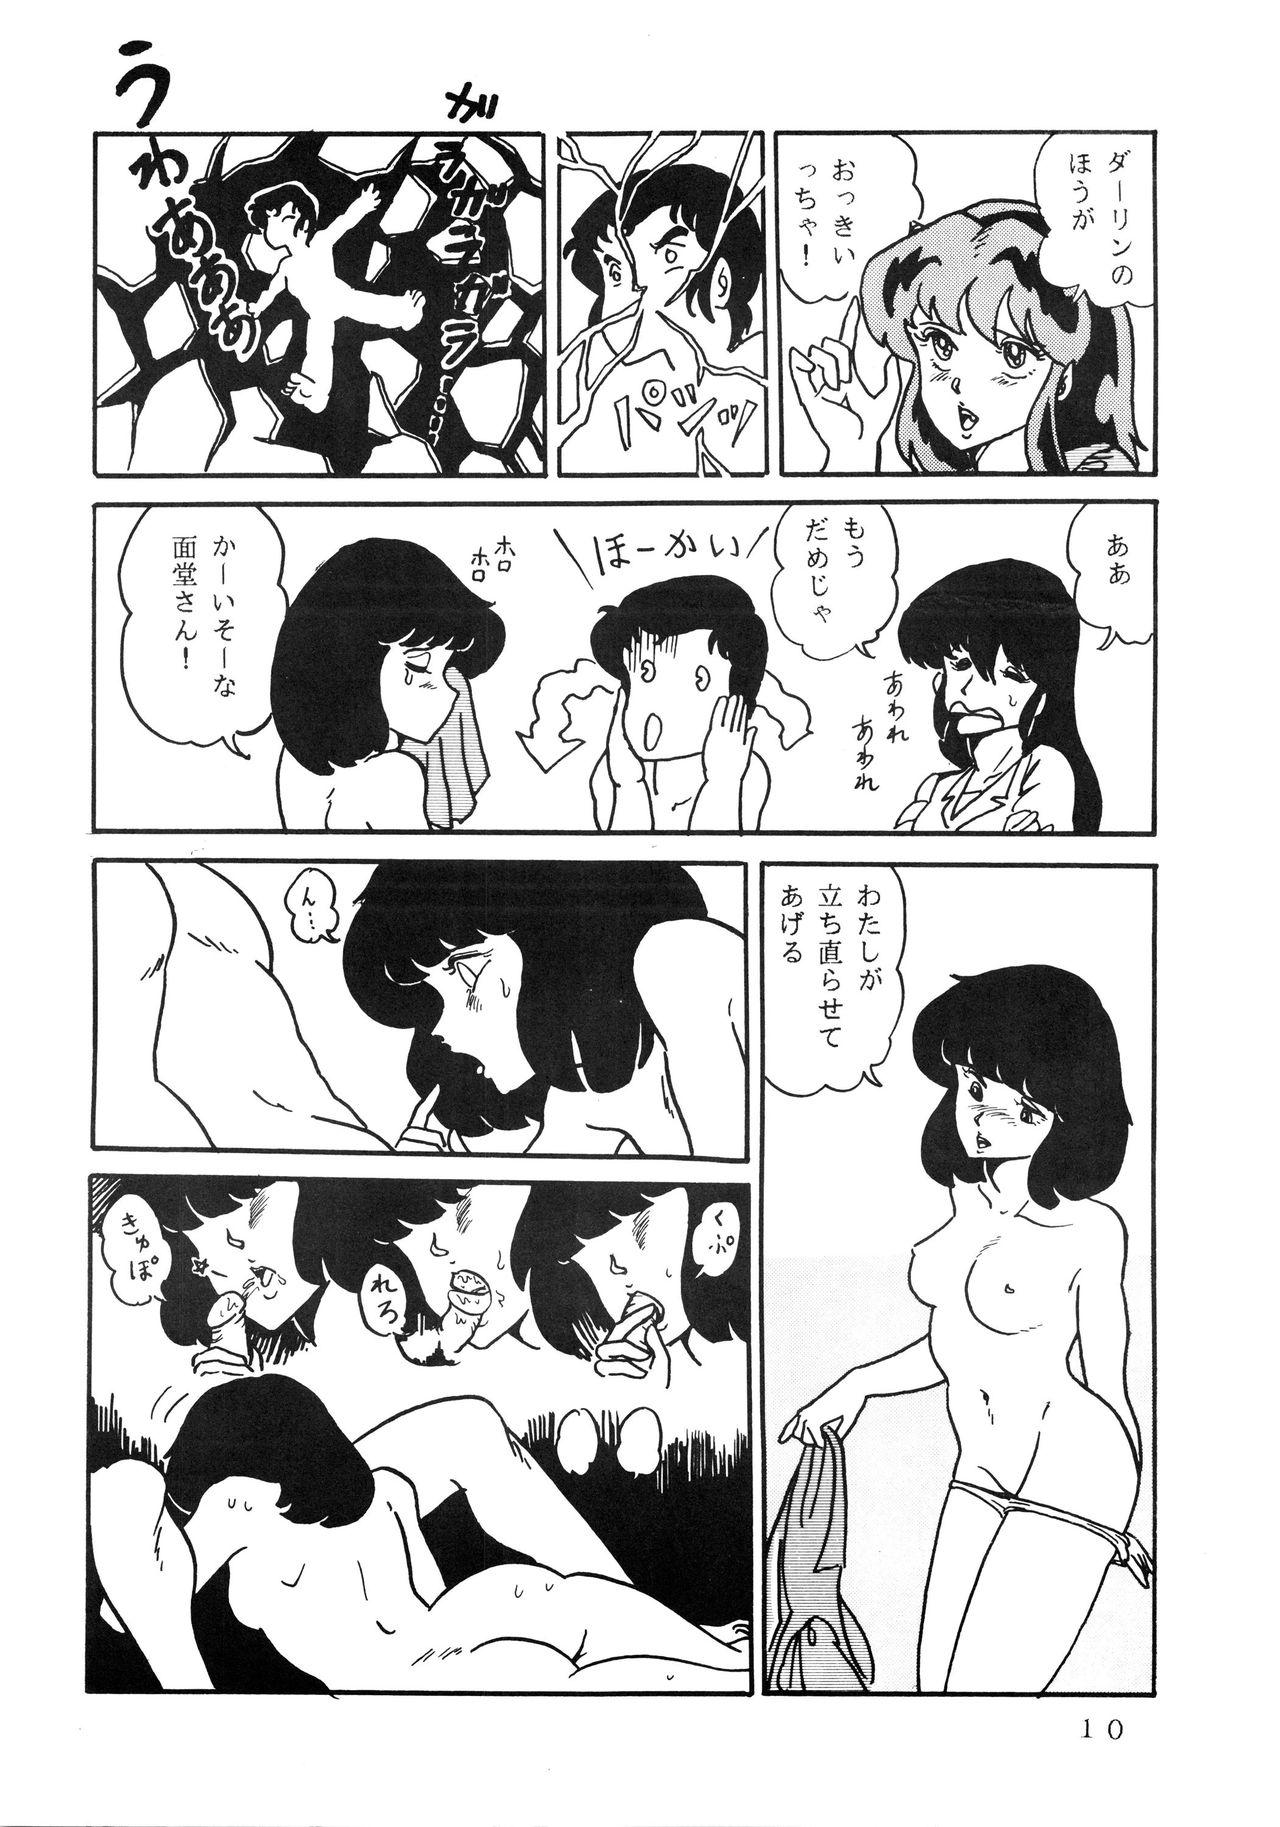 Redbone Shijou Saiaku no LUM 4 - Urusei yatsura Pigtails - Page 10